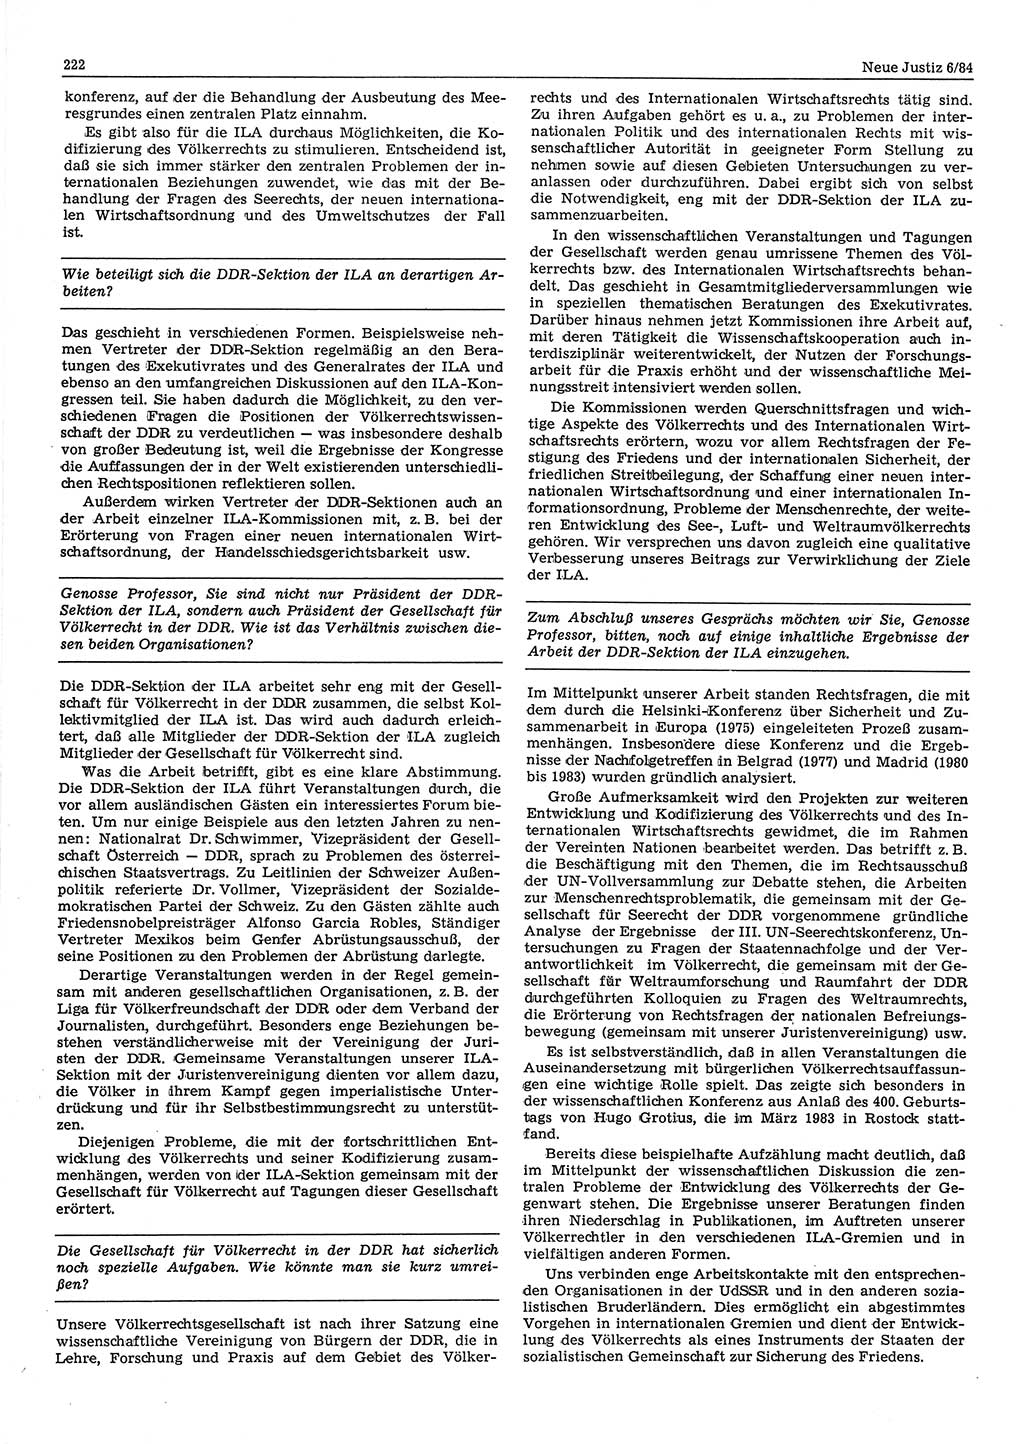 Neue Justiz (NJ), Zeitschrift für sozialistisches Recht und Gesetzlichkeit [Deutsche Demokratische Republik (DDR)], 38. Jahrgang 1984, Seite 222 (NJ DDR 1984, S. 222)